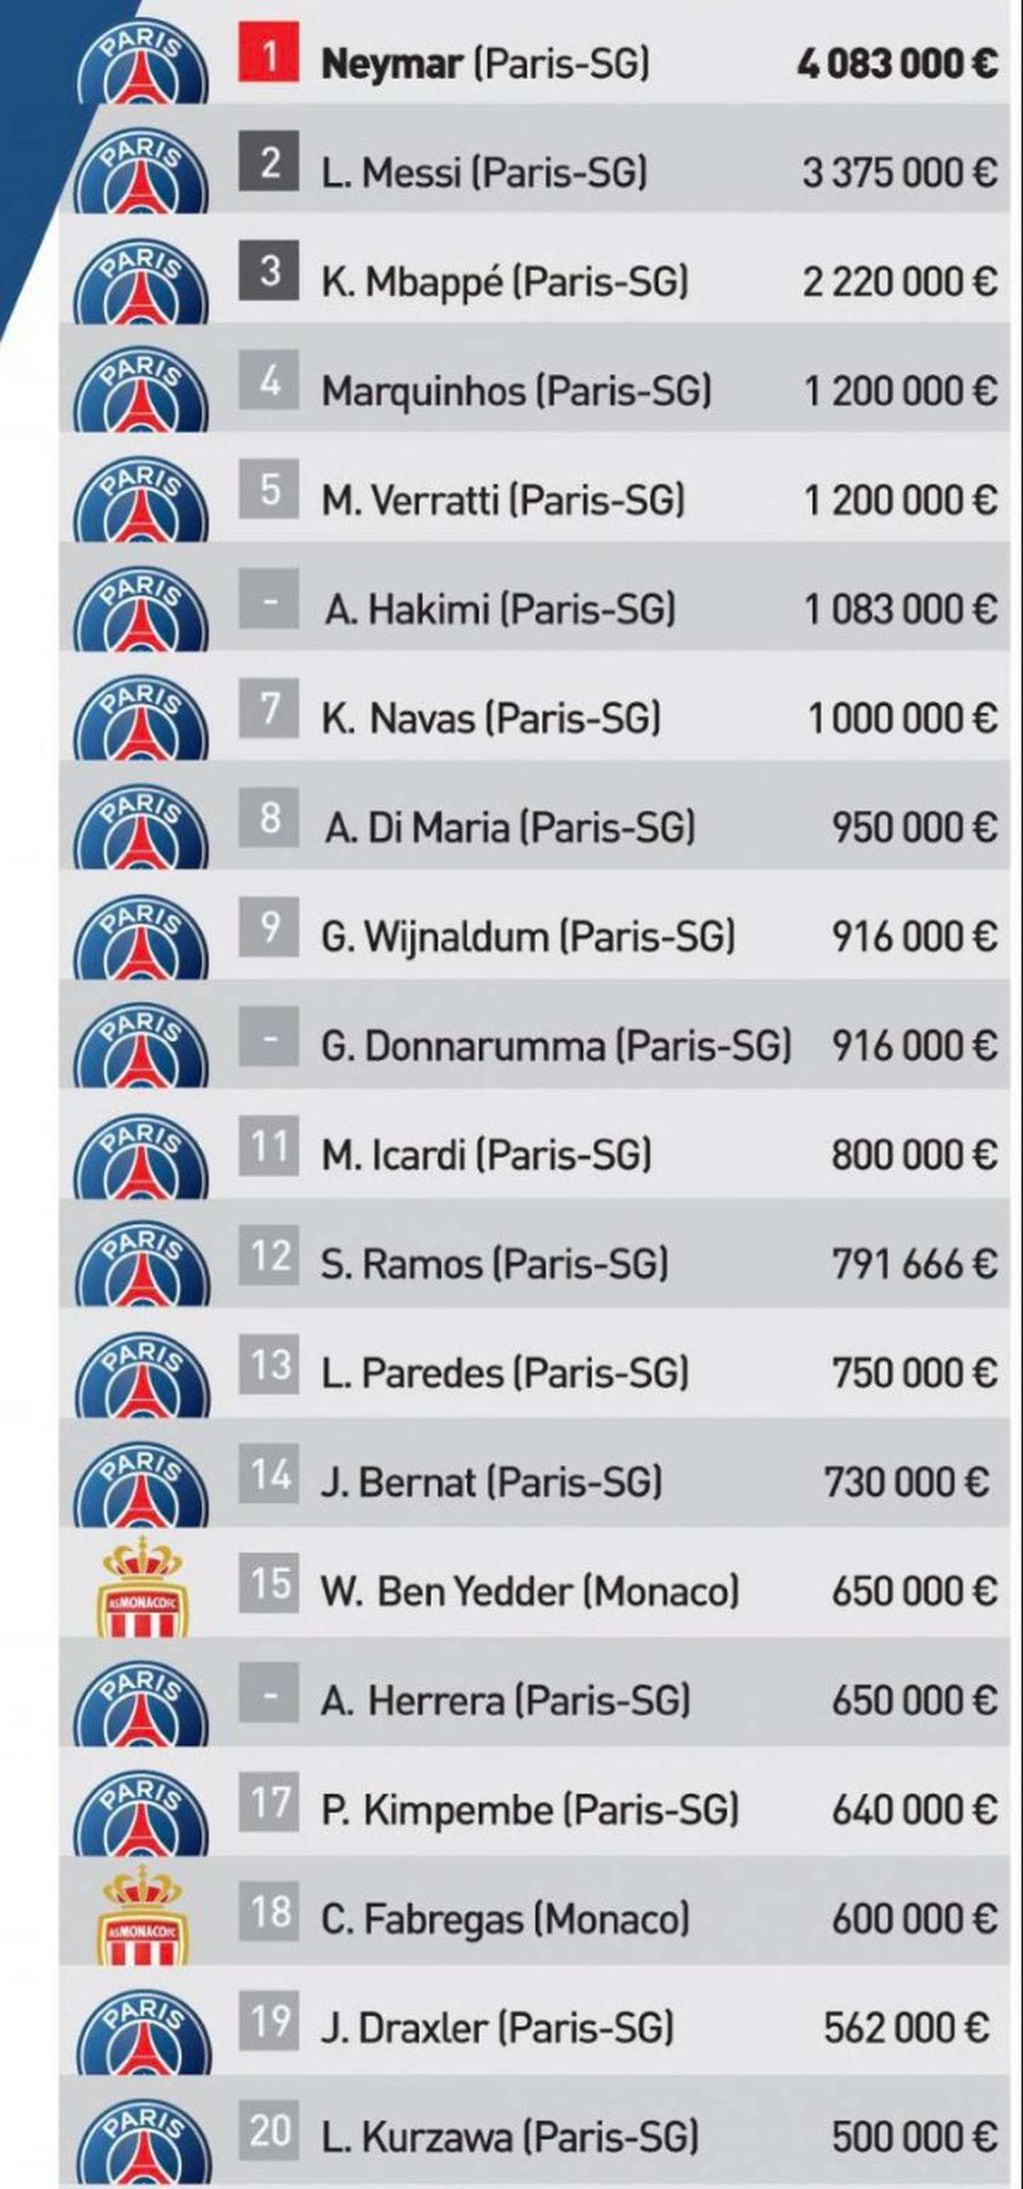 La lista completa de los jugadores que más ganan en la Ligue 1